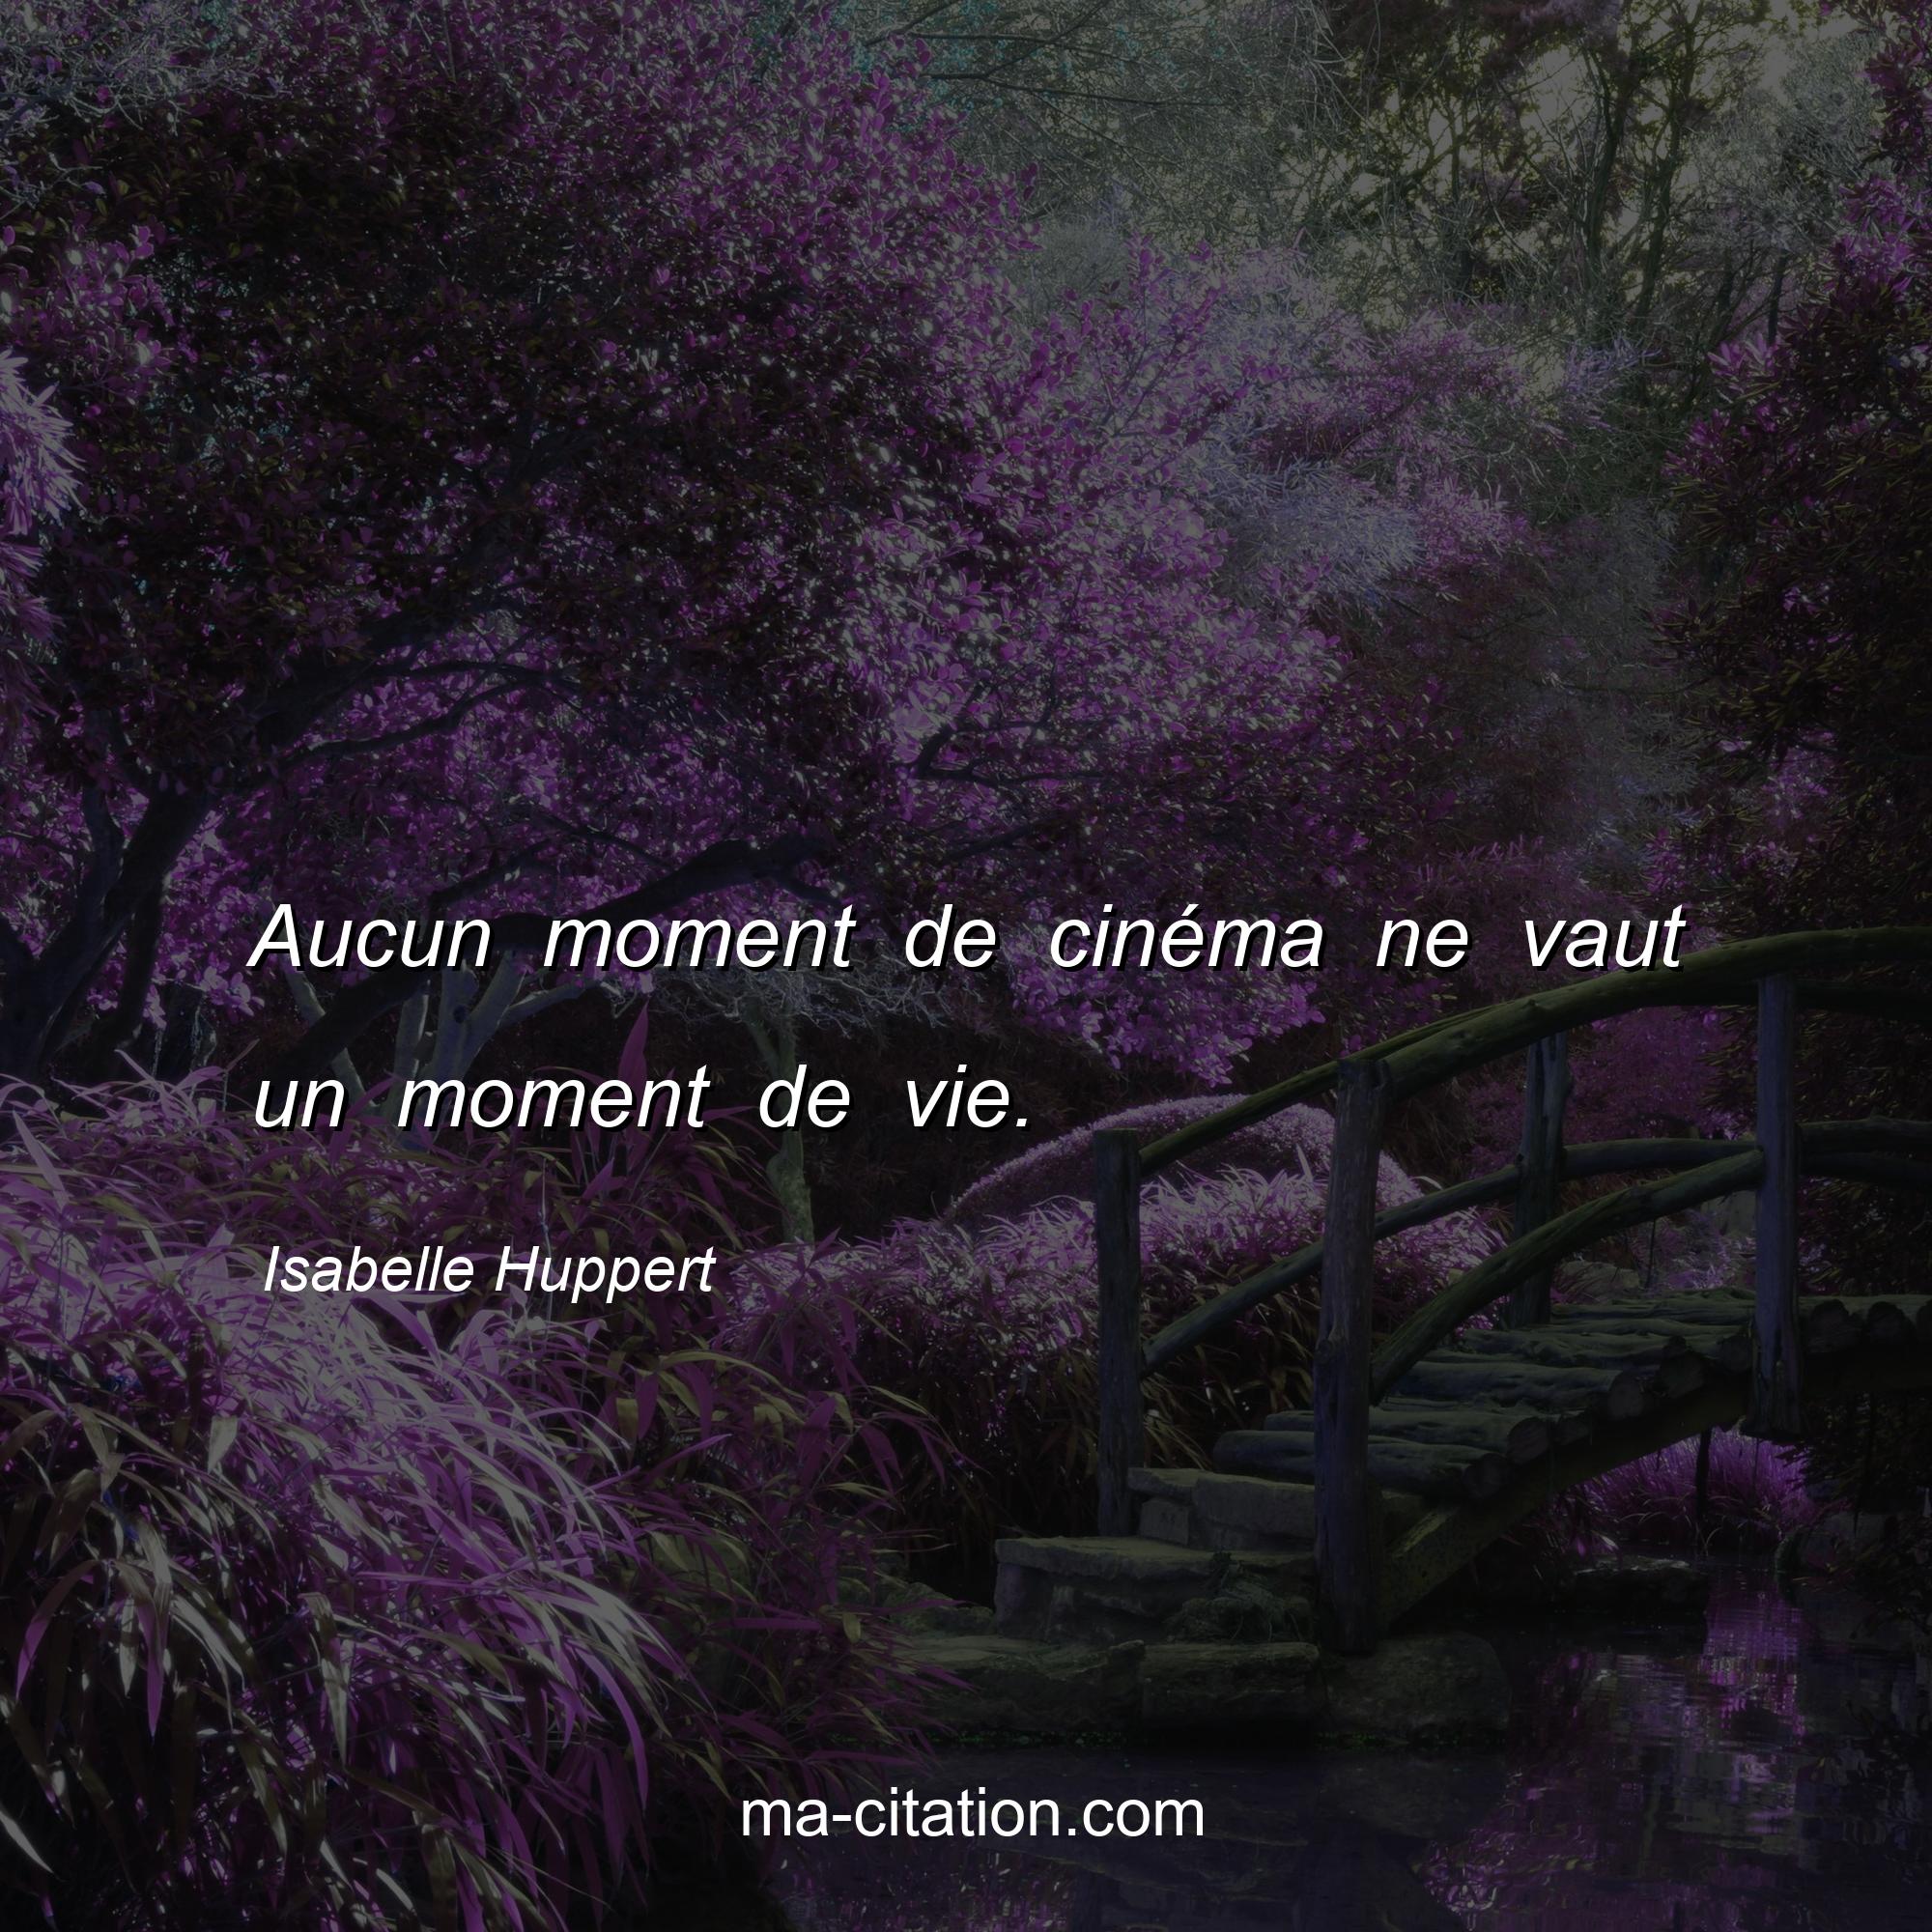 Isabelle Huppert : Aucun moment de cinéma ne vaut un moment de vie.